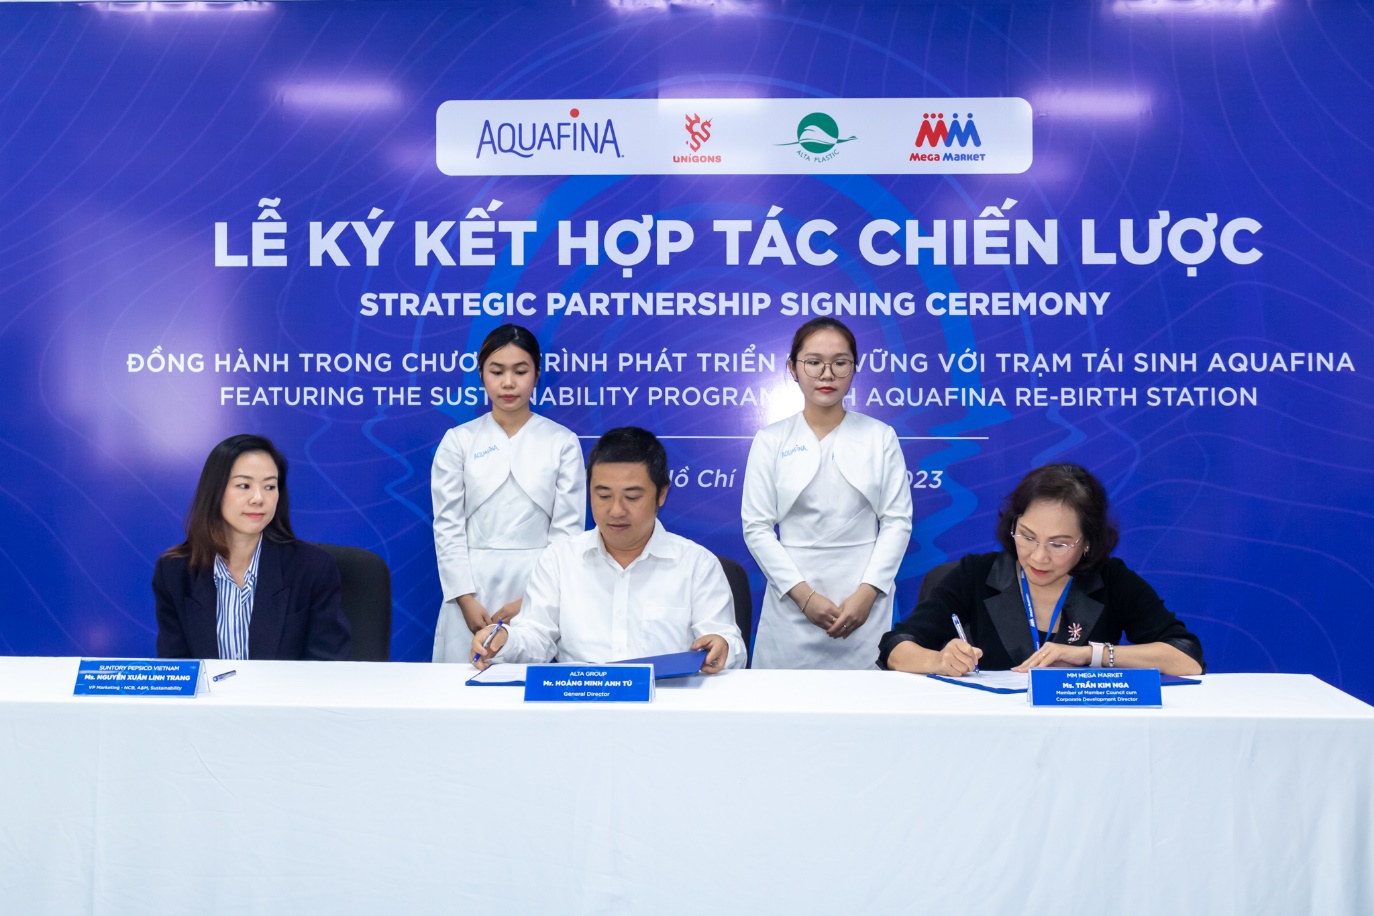 Lễ Ký kết hợp tác chiến lược giữa Aquafina, MM Mega Market Việt Nam, ALTA Group